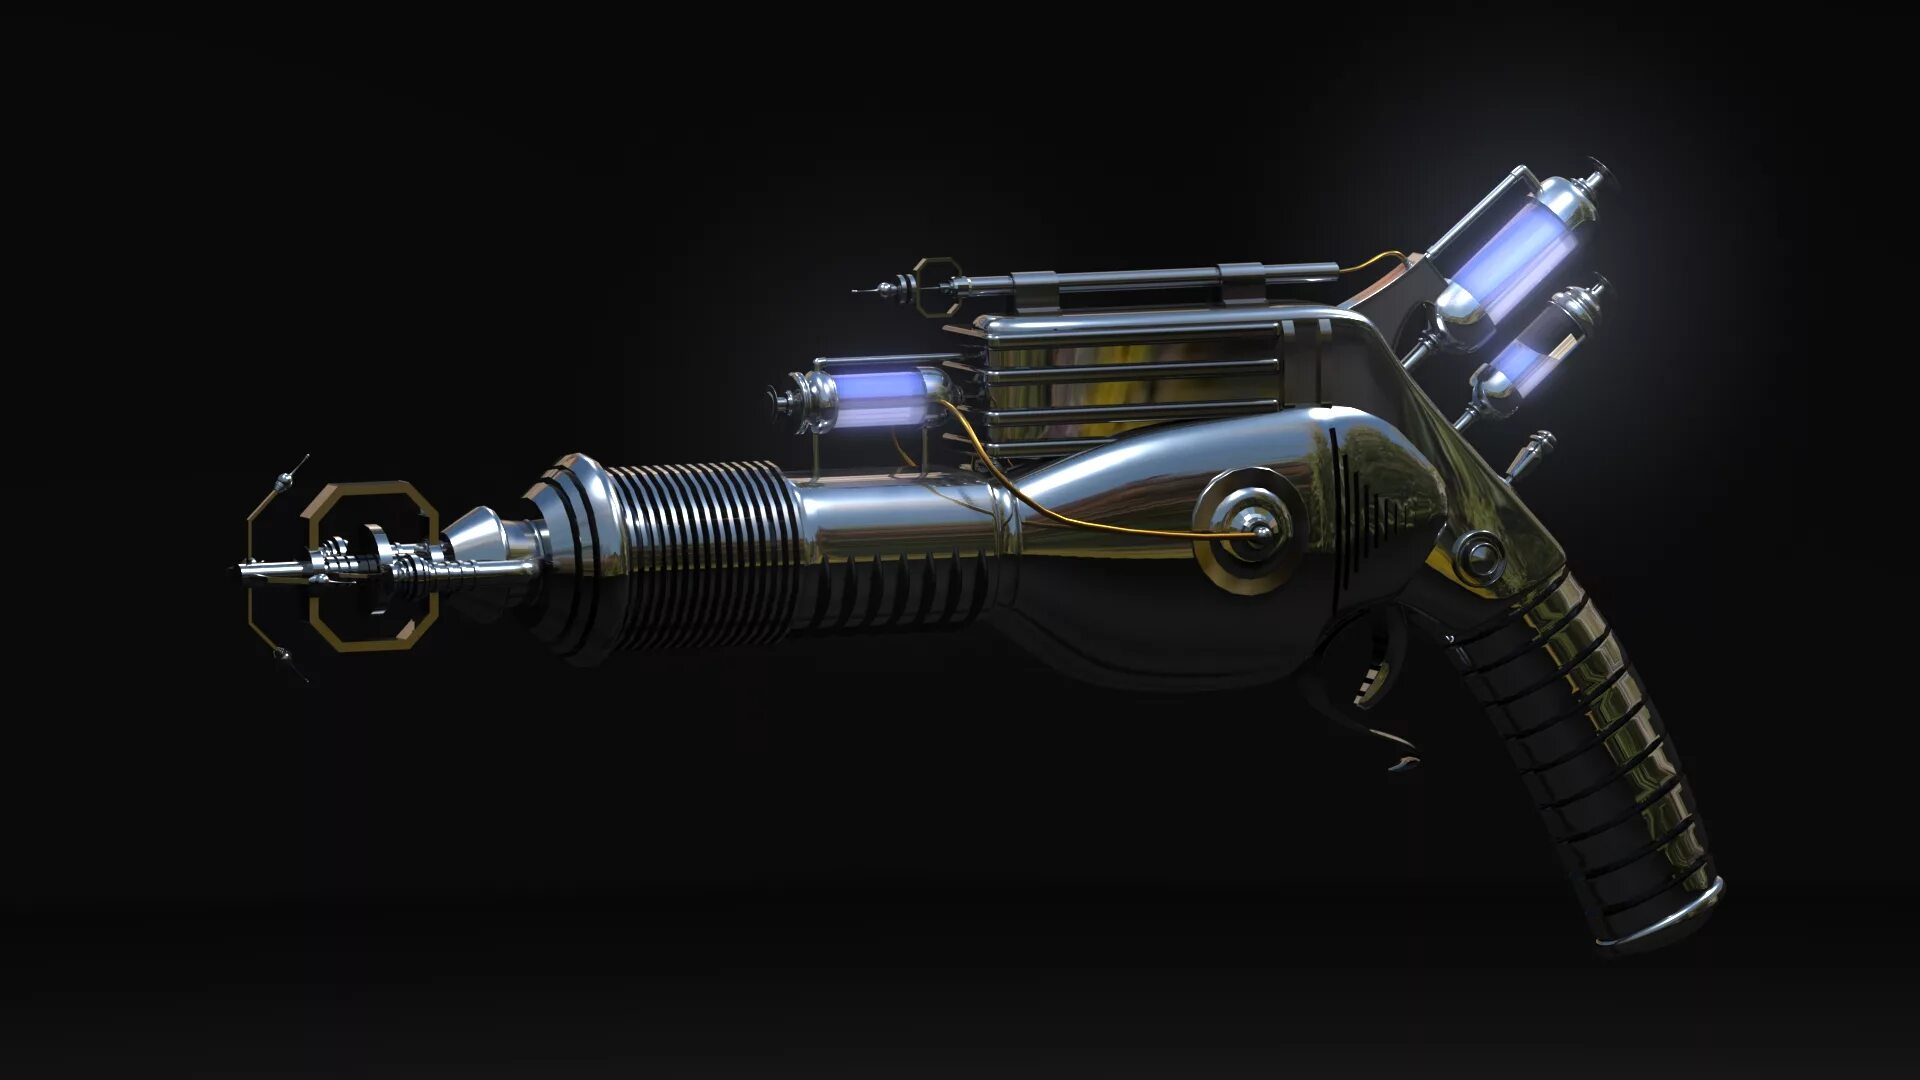 Пушка холодного воздуха. Оружие будущего Миниган плазма. Оружие zf1. Револьвер будущего.